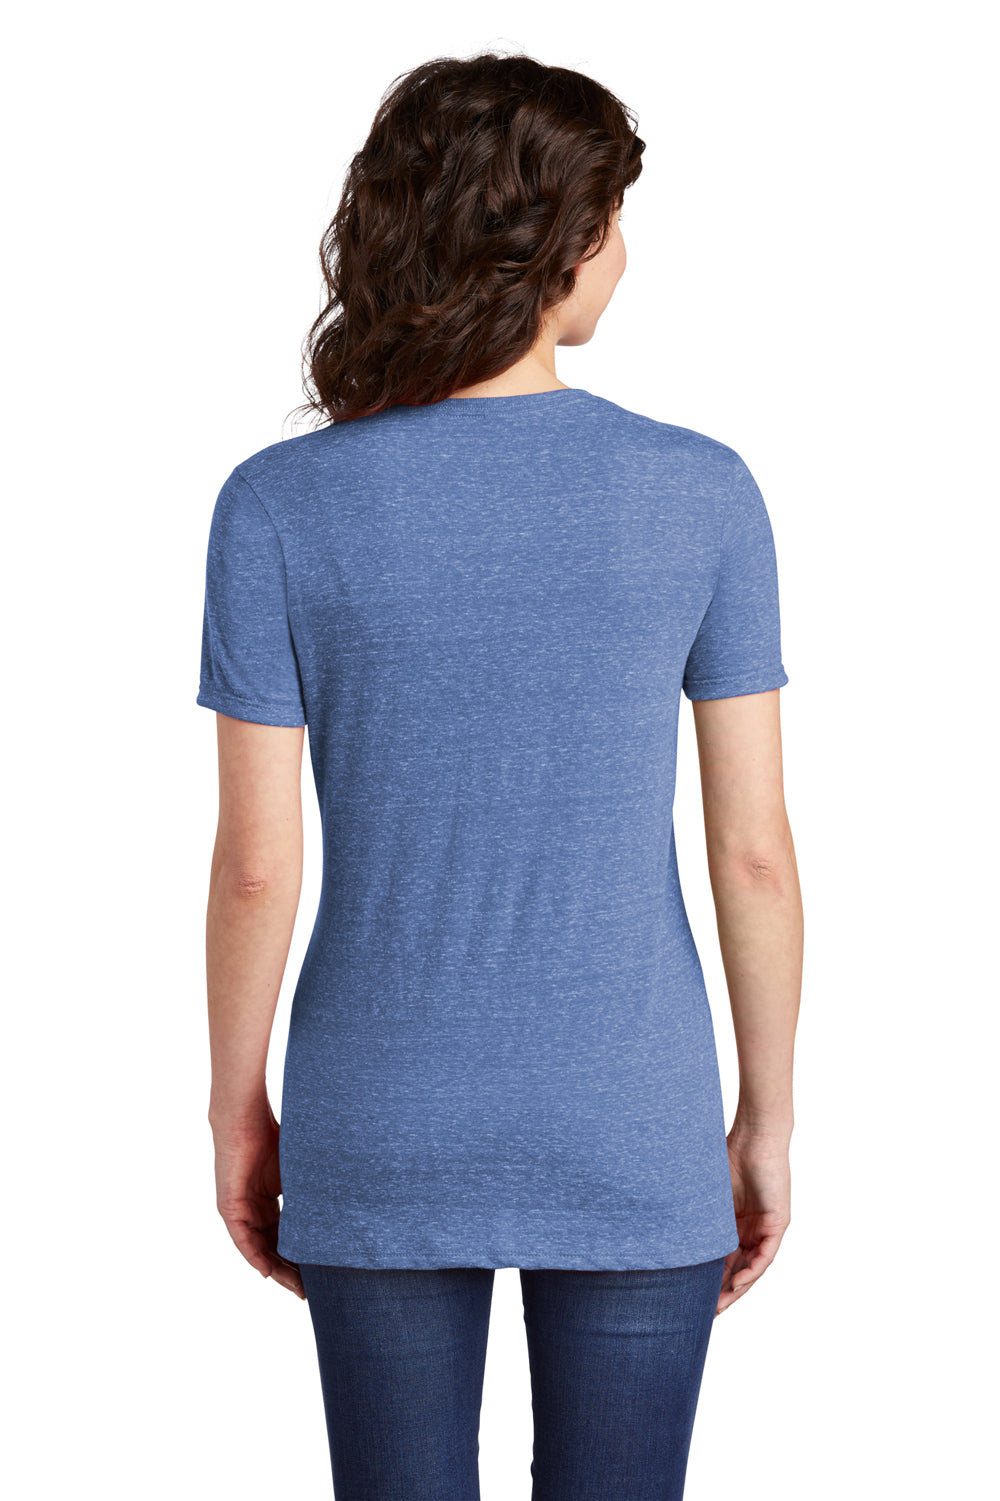 Jerzees Womens Vintage Snow Short Sleeve V-Neck T-Shirt Royal Blue Side